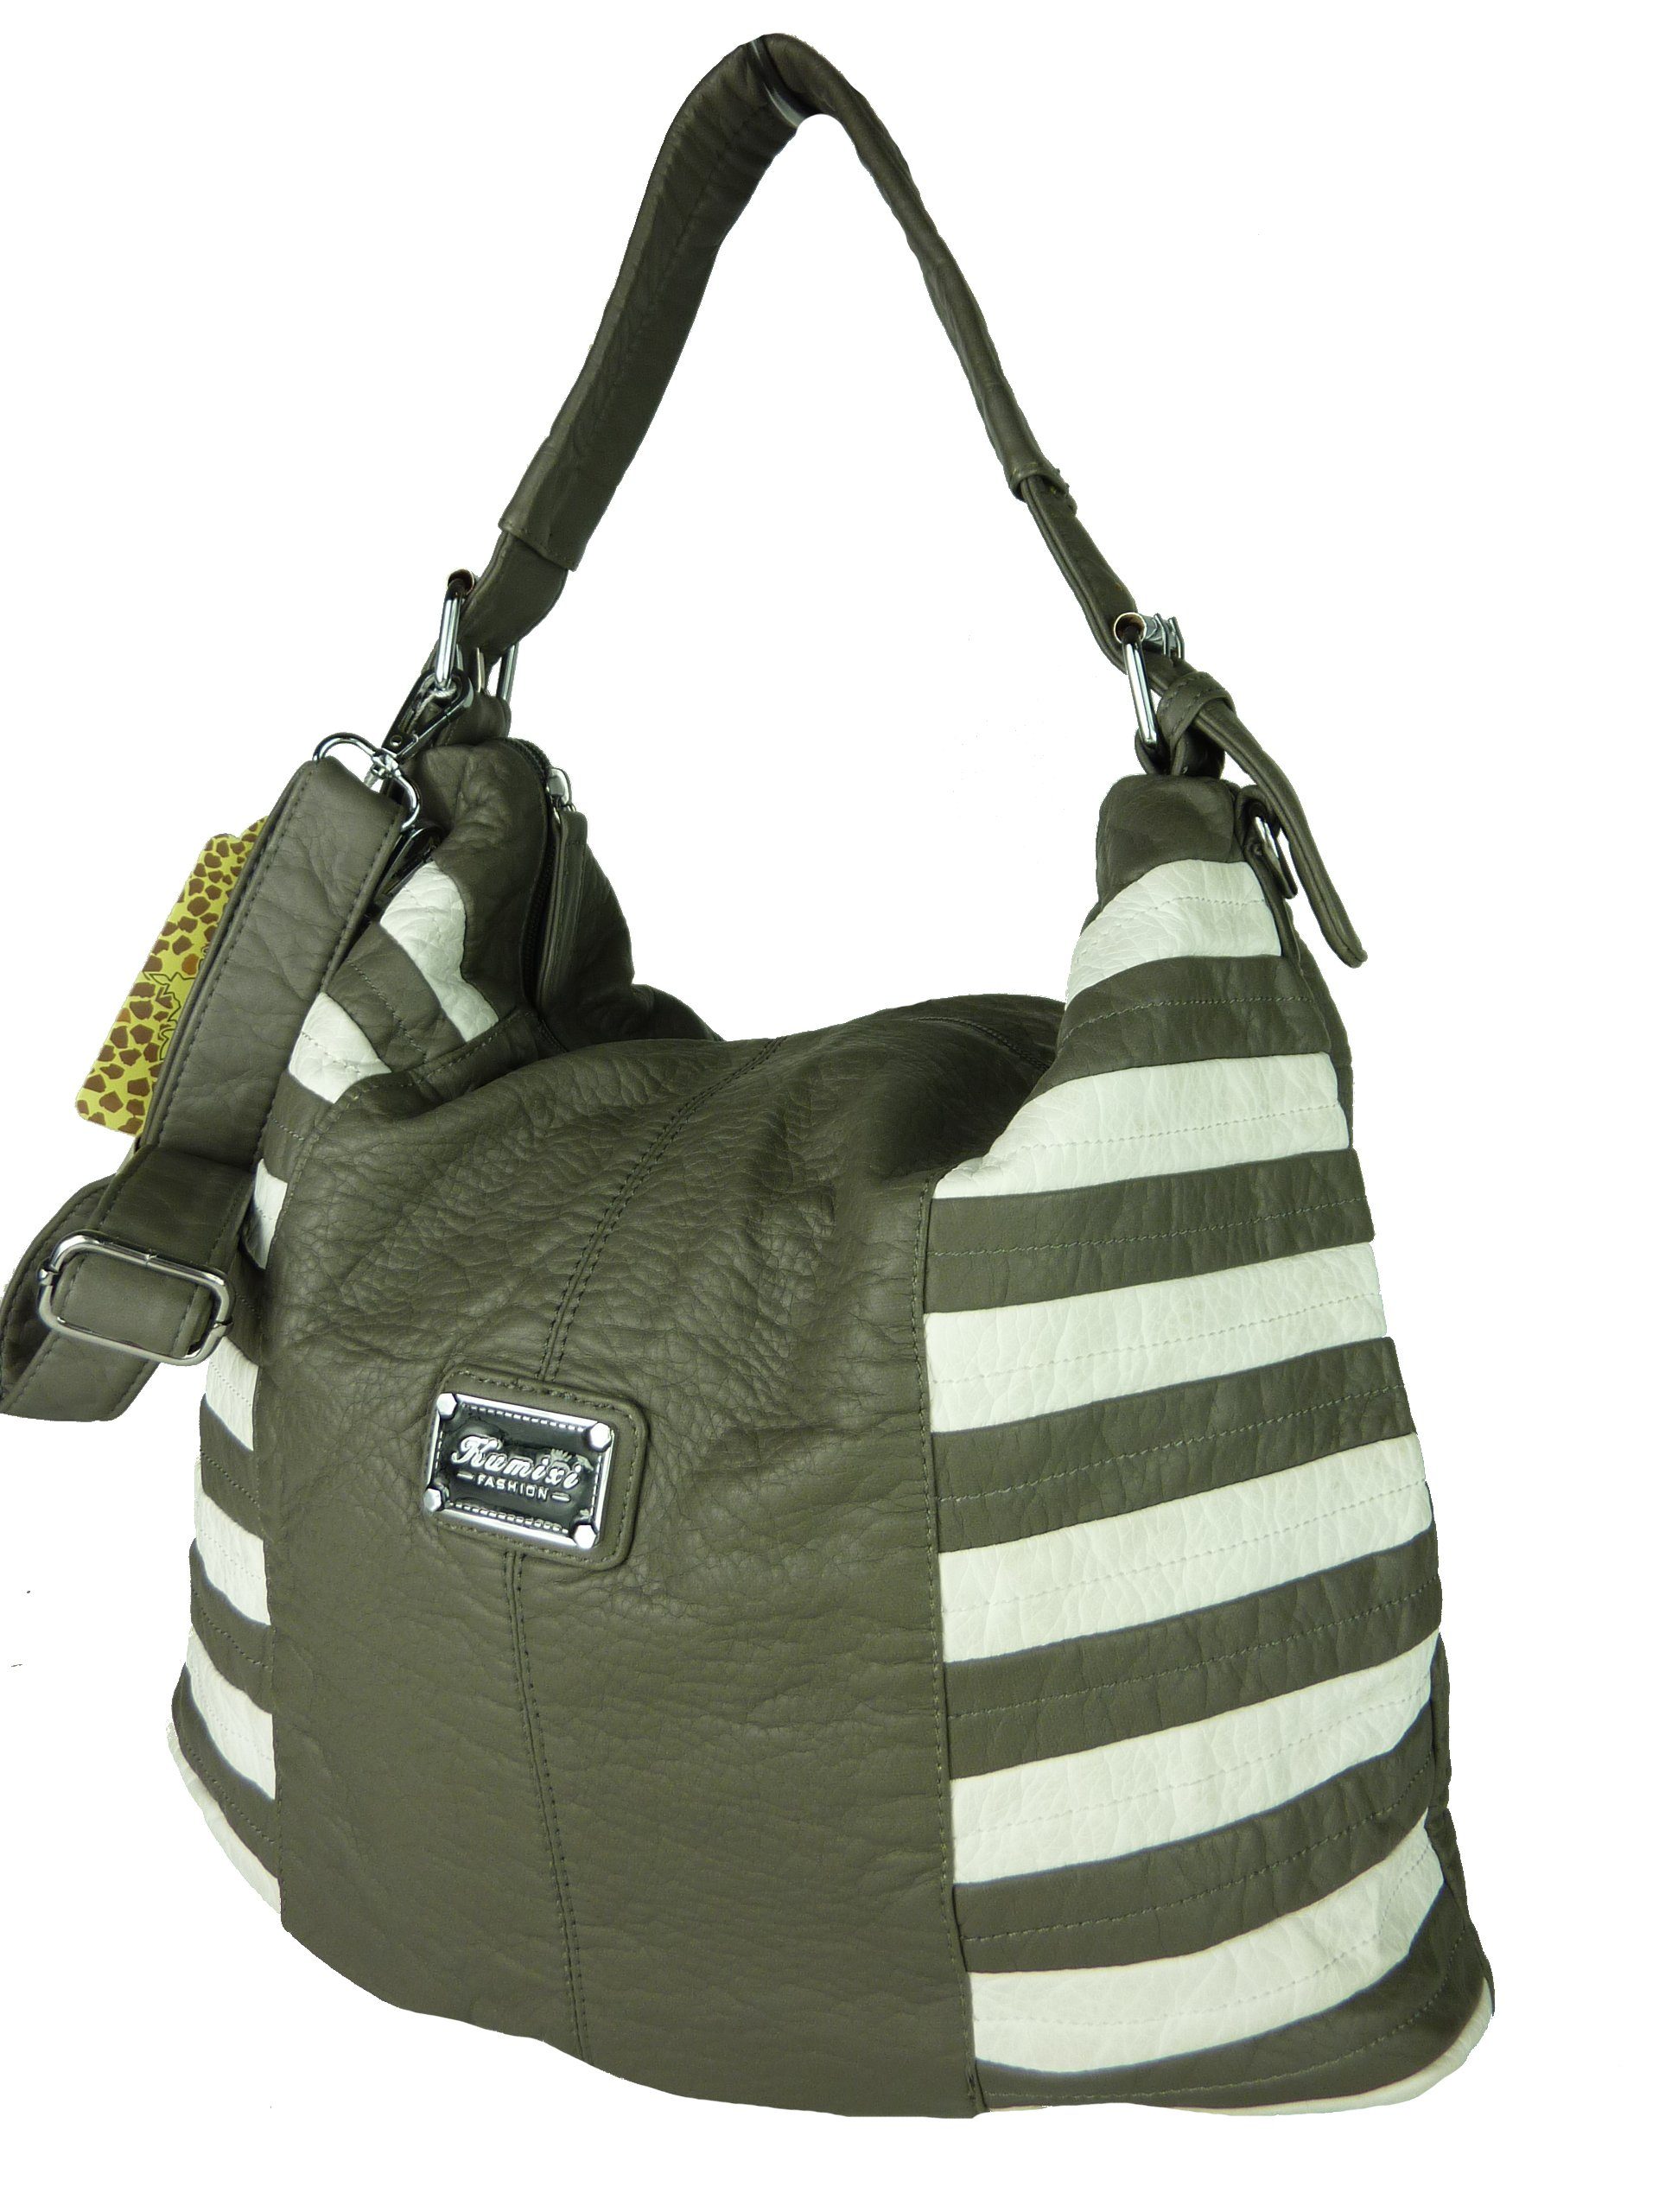 Taschen4life Schultertasche Damen Shopper Tasche gestreift KM1576, Handtasche mit Streifen, modische Umhängetasche, Trageriemen grey/white